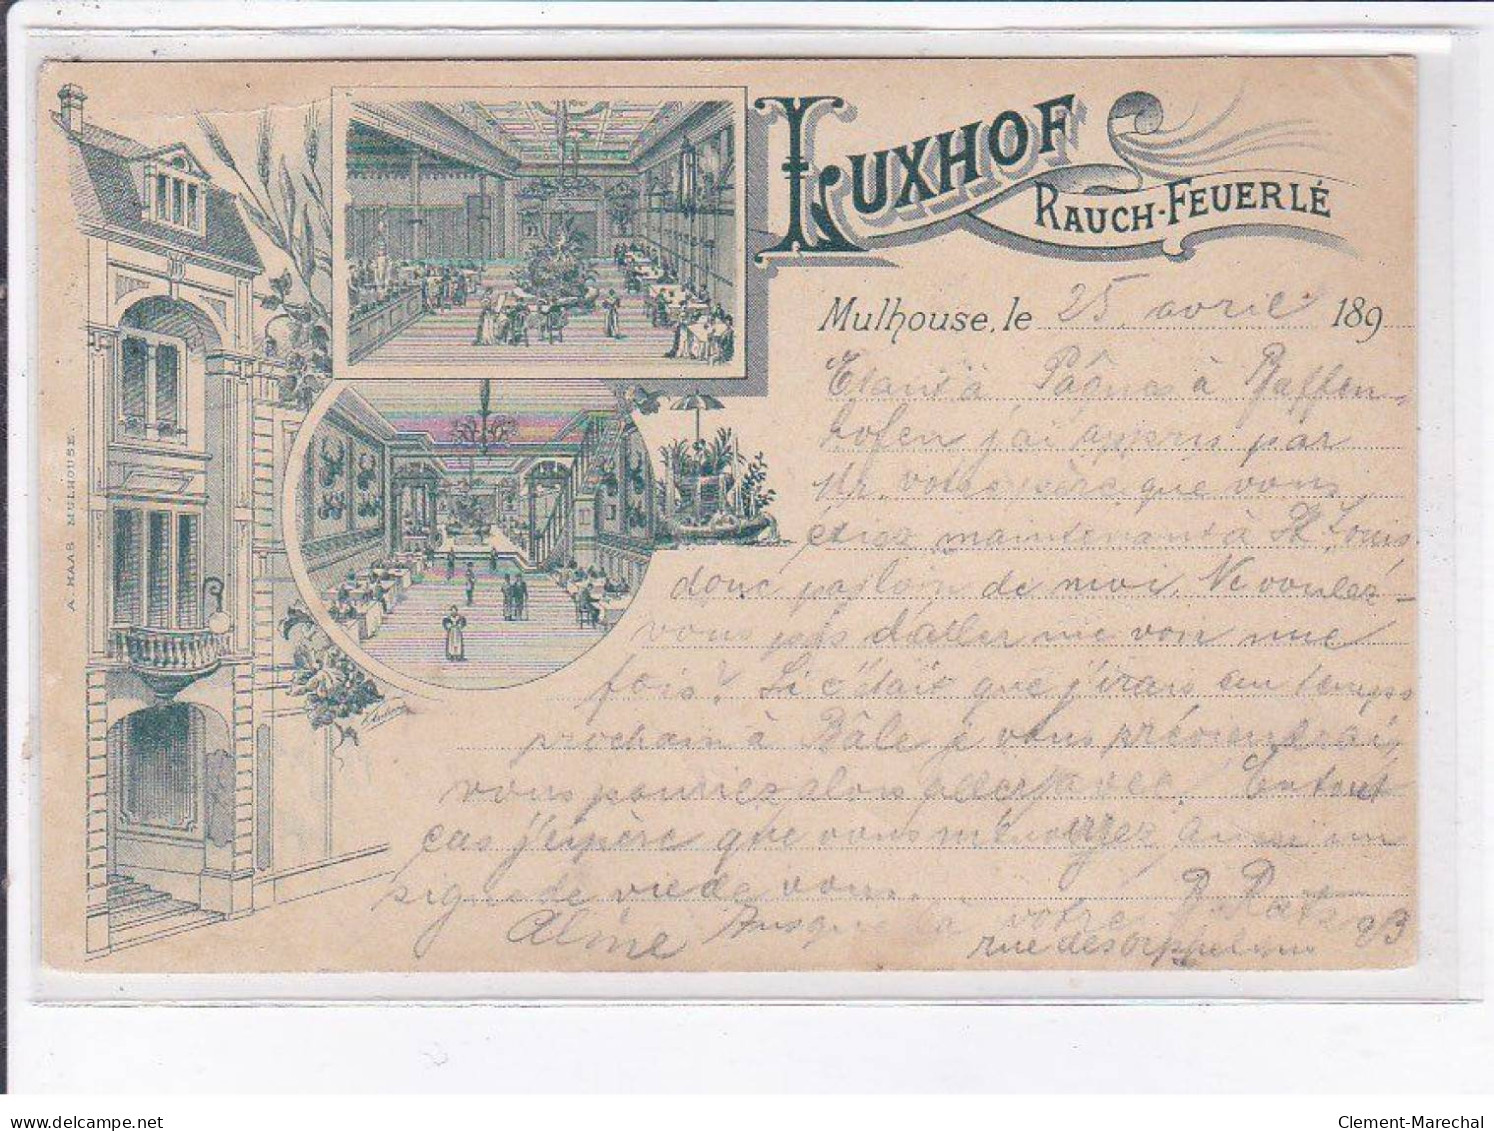 MULHOUSE: Luxhof Rauch-feuerlé 1897 - état - Mulhouse